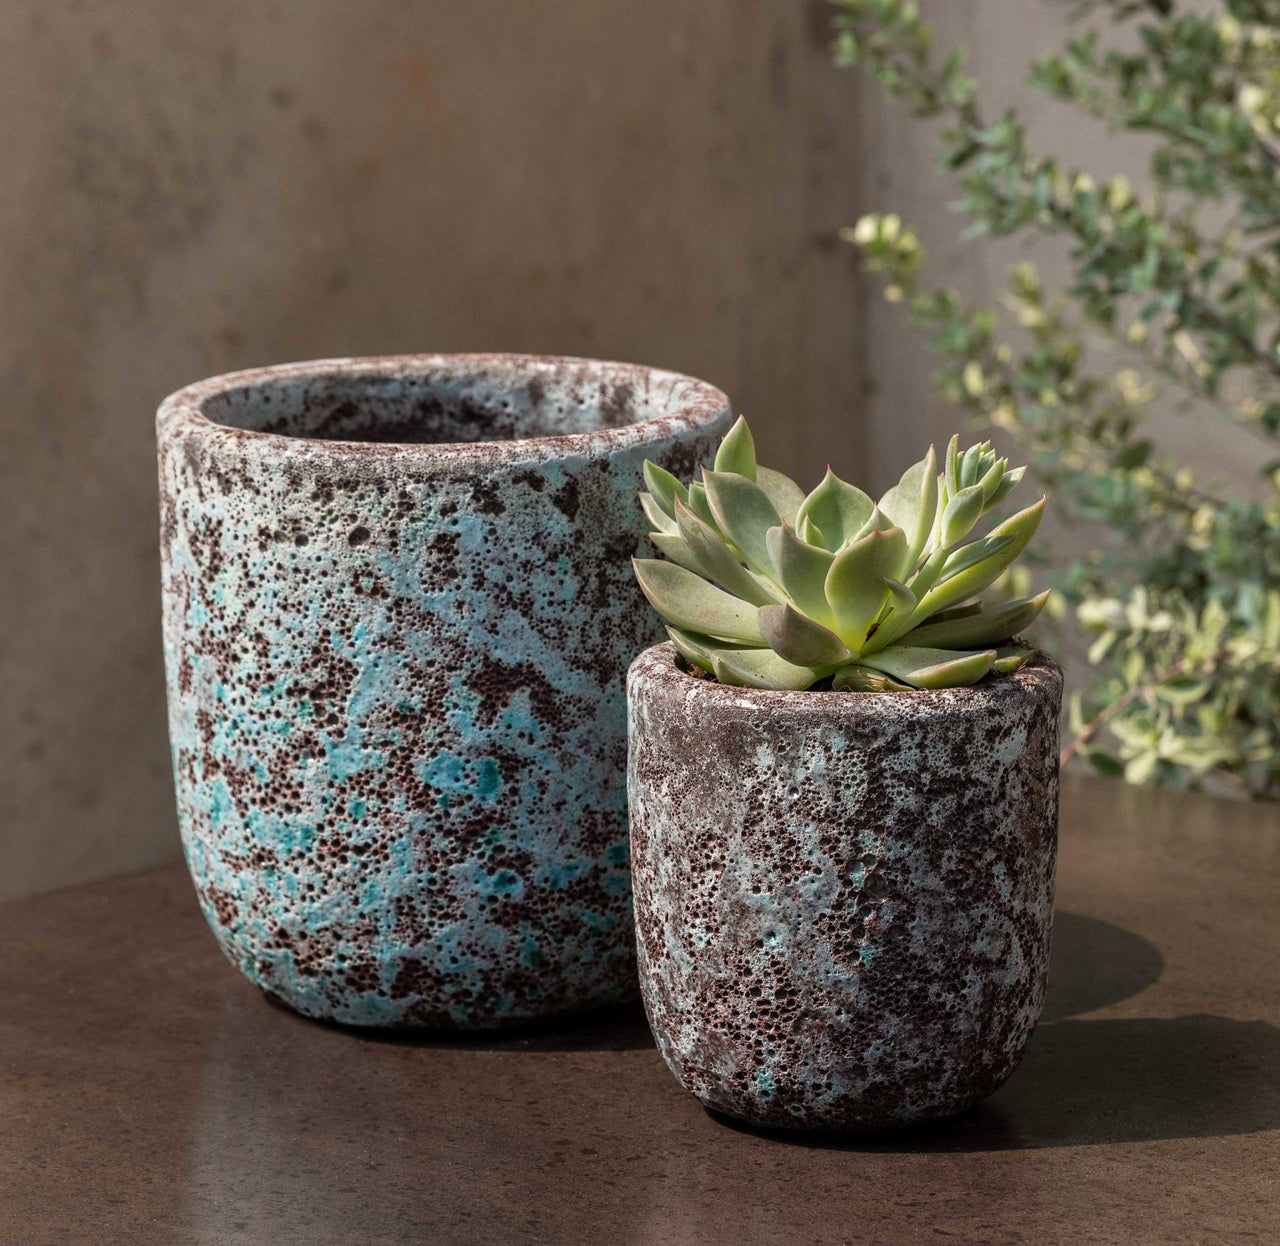 Campania International Glazed Pottery Dao Planter-S/8 Urn/Planter Campania International Verdigris 